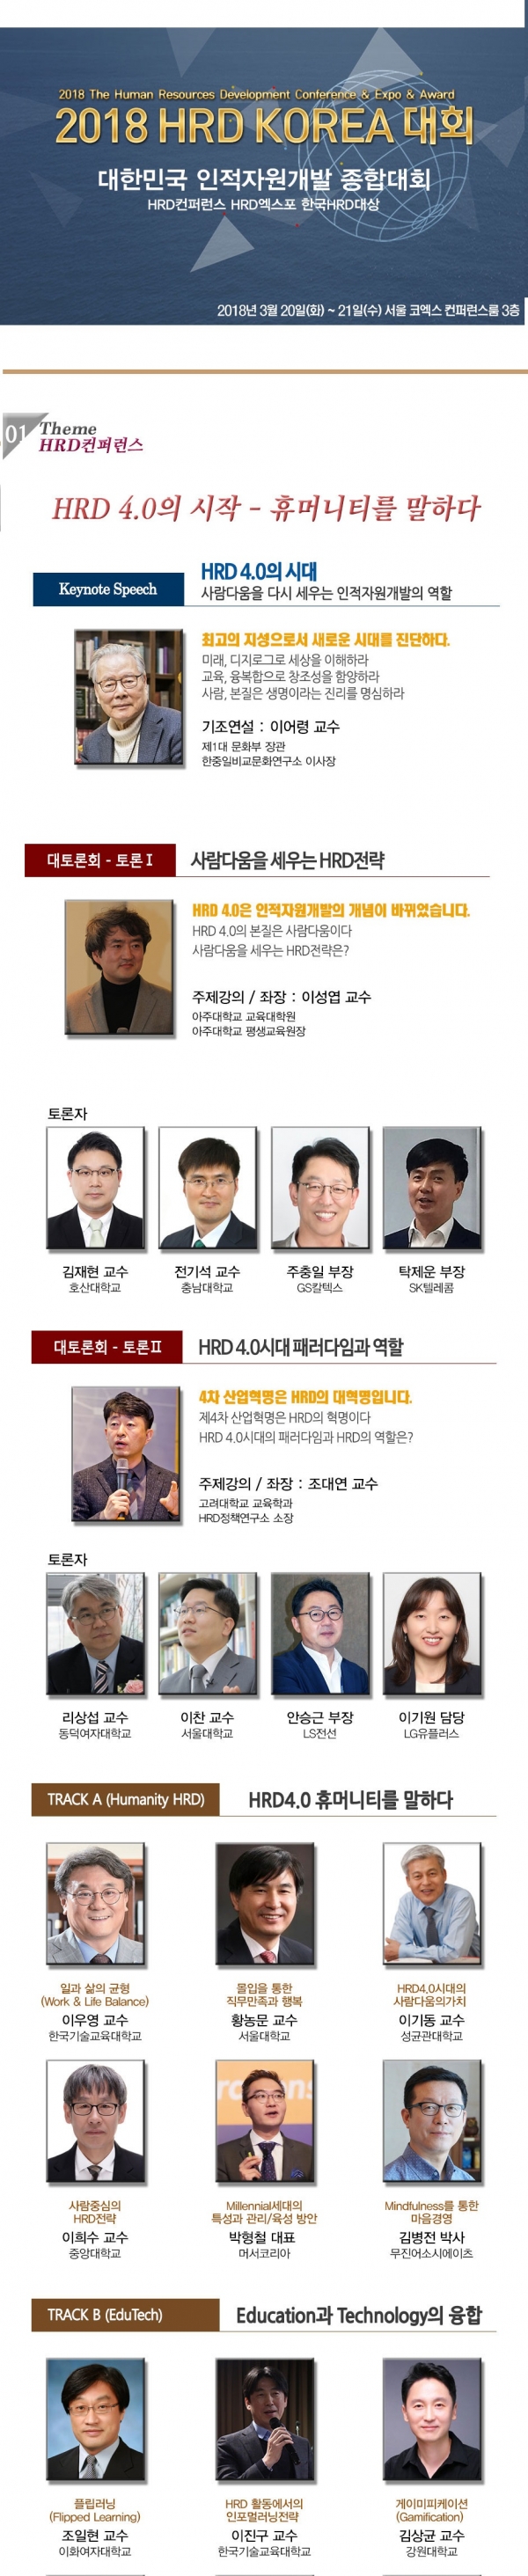 ‘HRD KOREA 2018’ 포스터